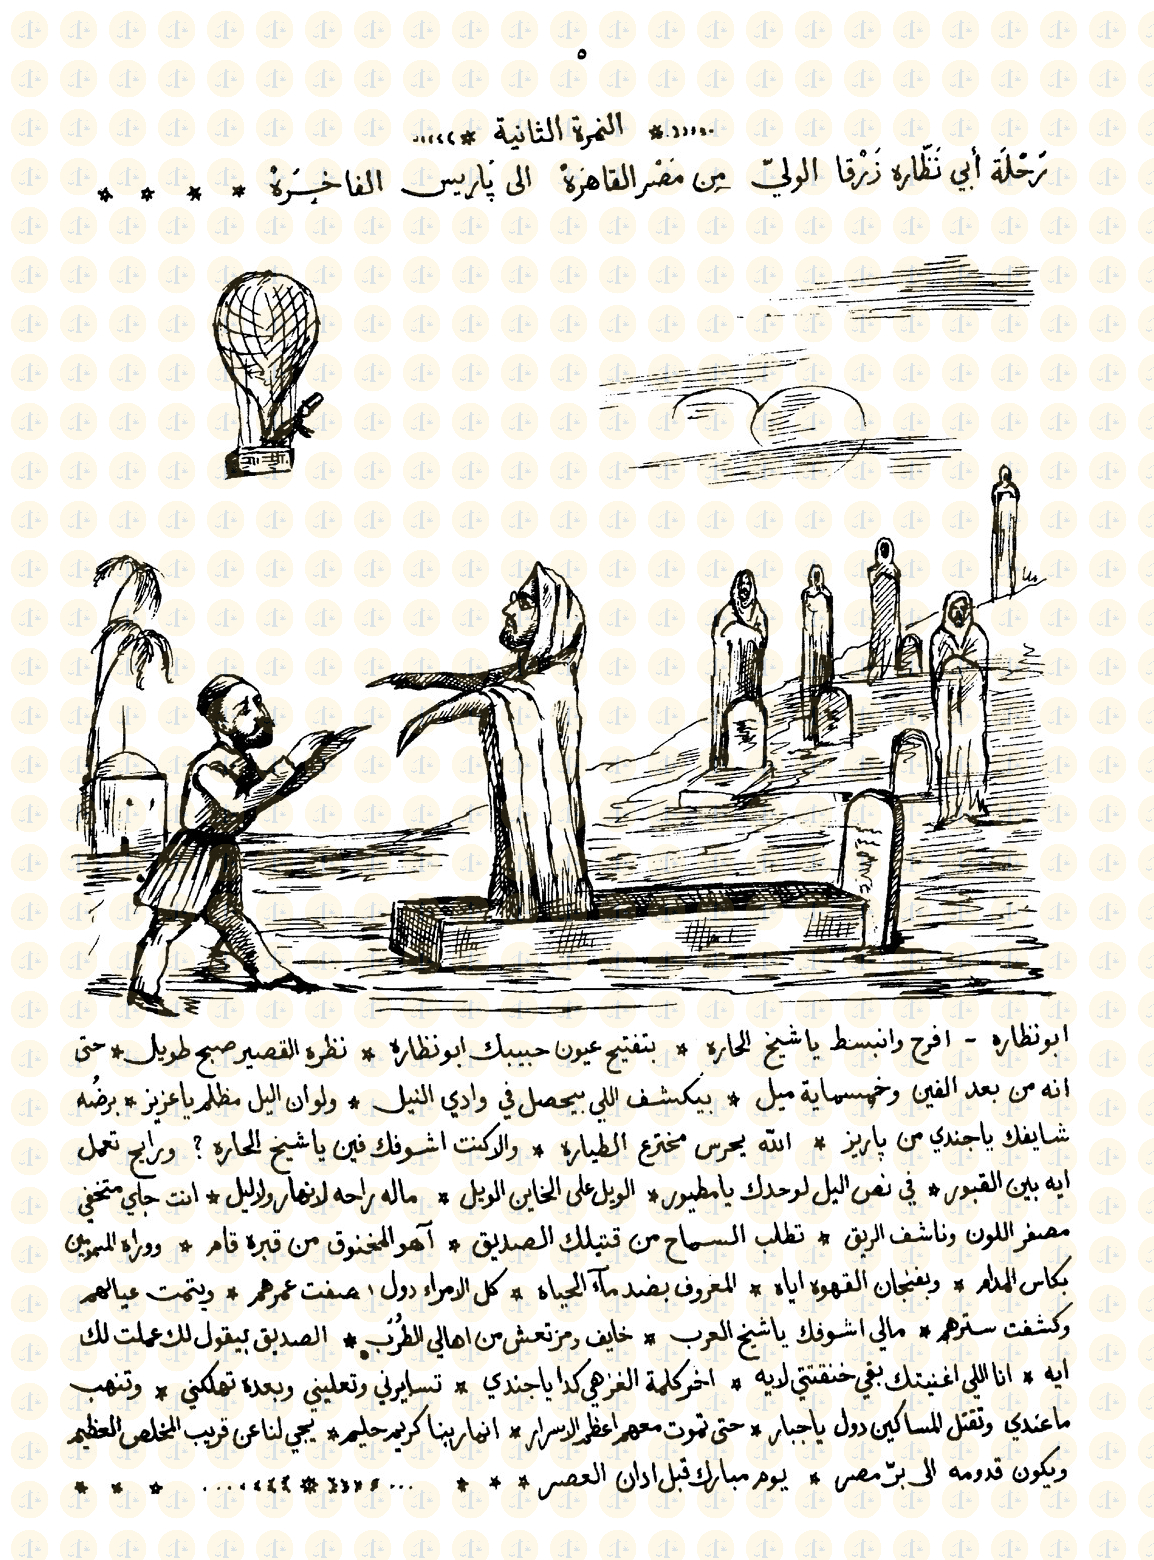 &#8220;ننشرها كاملةً&#8221; رسومات الكاريكاتير التي أغضبت الخديوي إسماعيل وسجنت حامليها